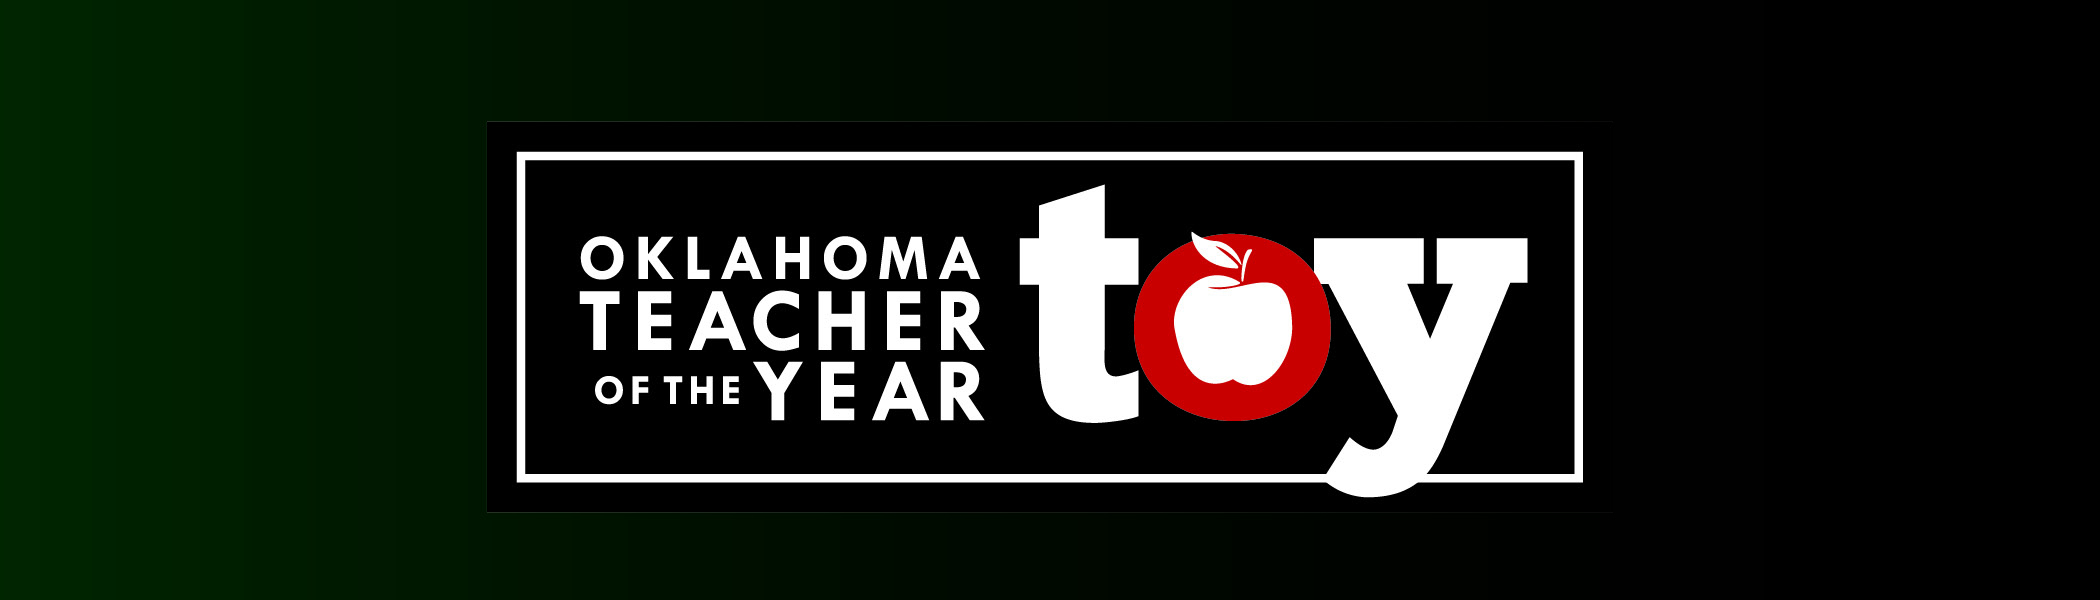 Oklahoma Teacher of the Year Banner